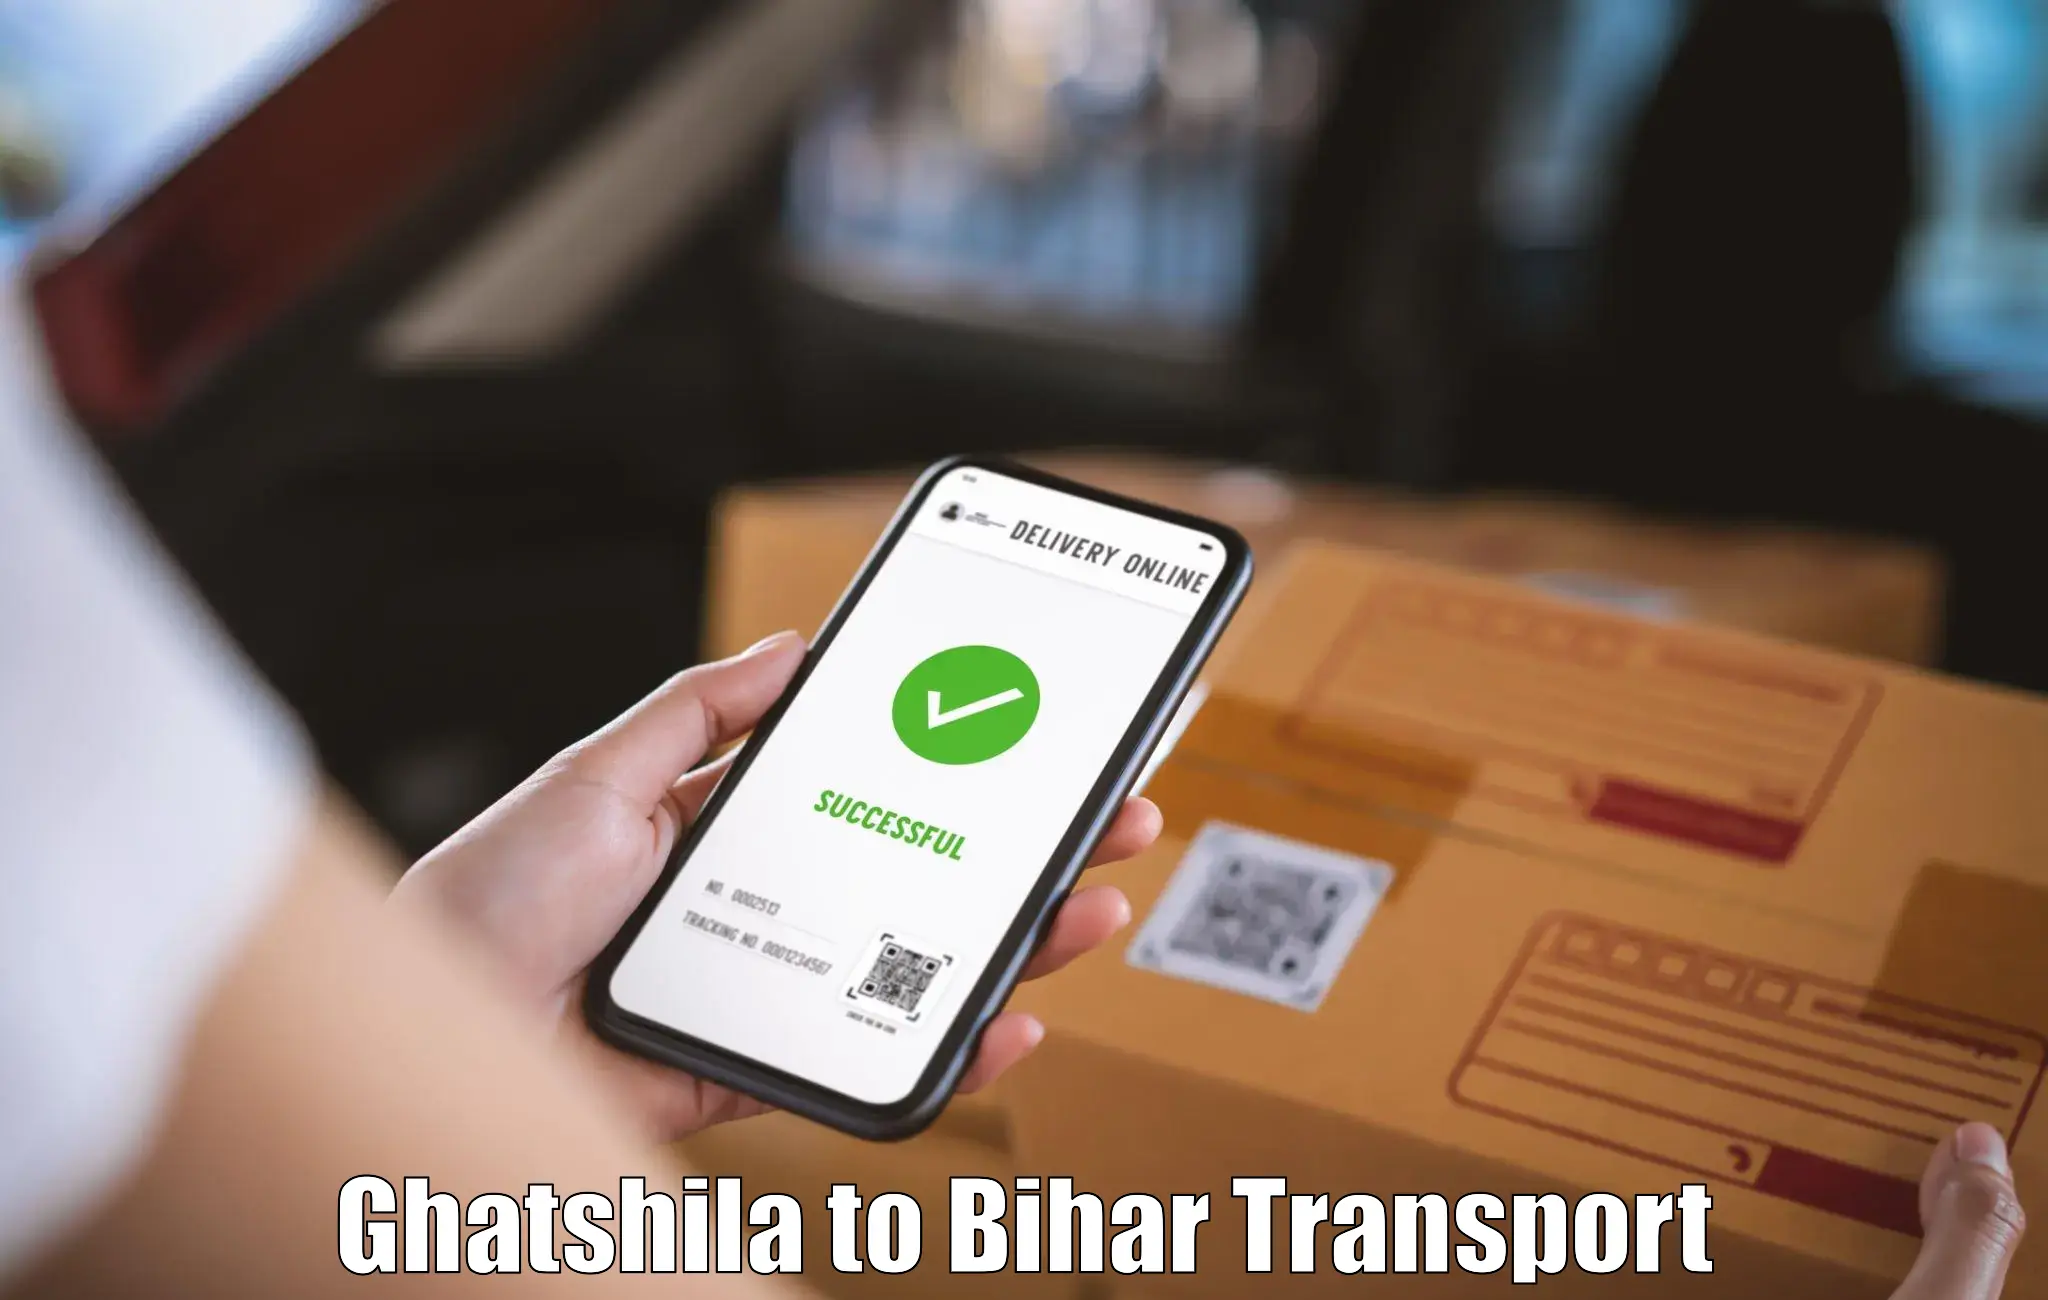 Daily transport service Ghatshila to Barhiya